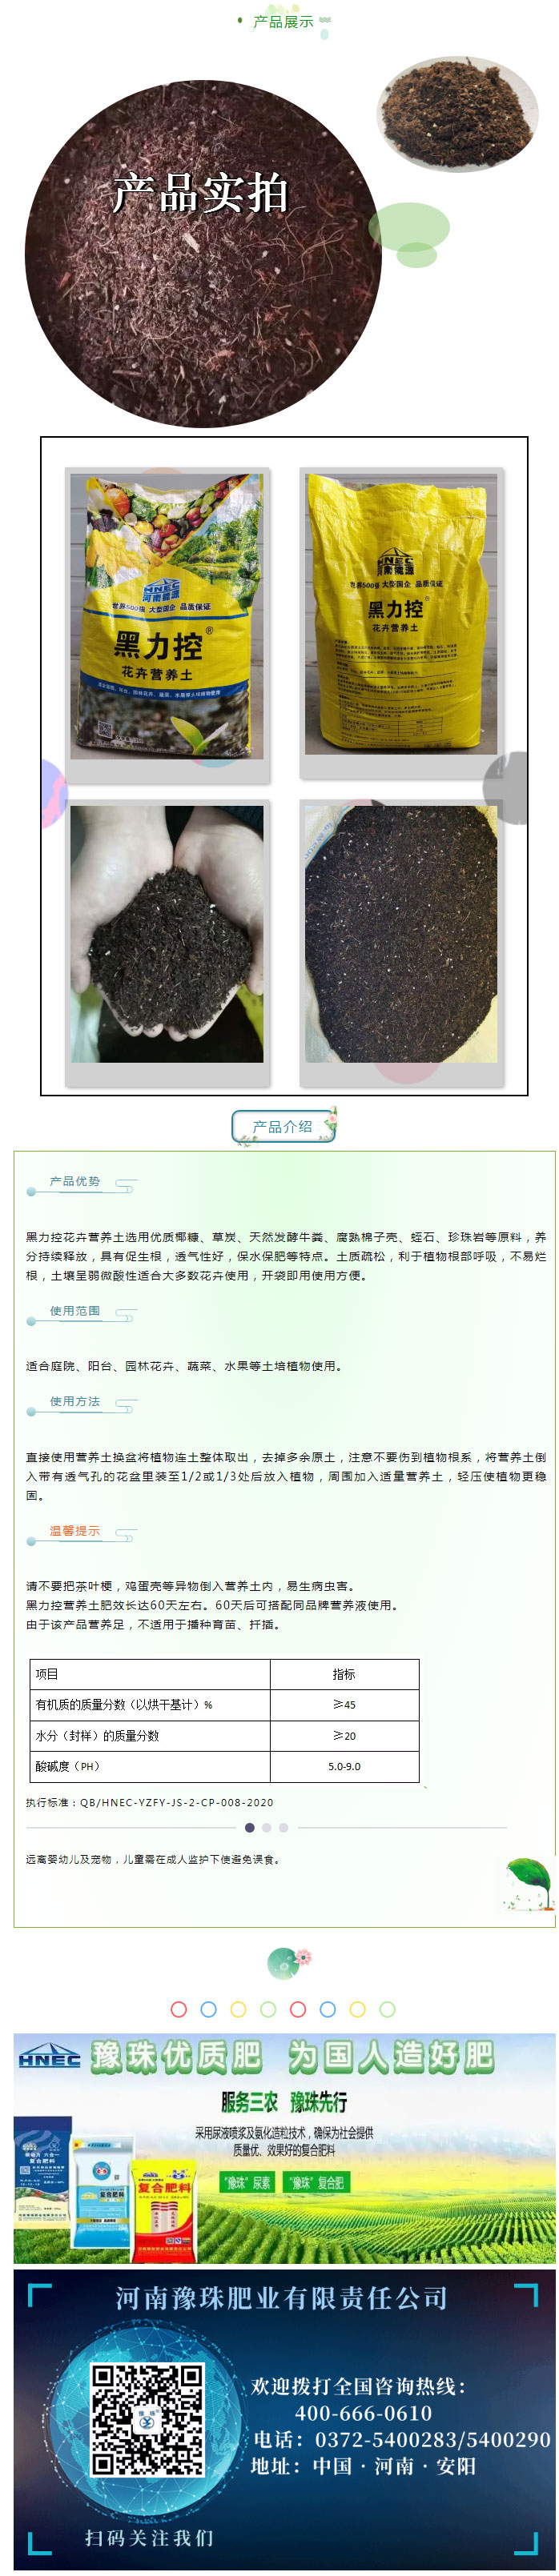 安化集团豫珠肥业推出花肥新产品---花卉营养土_03